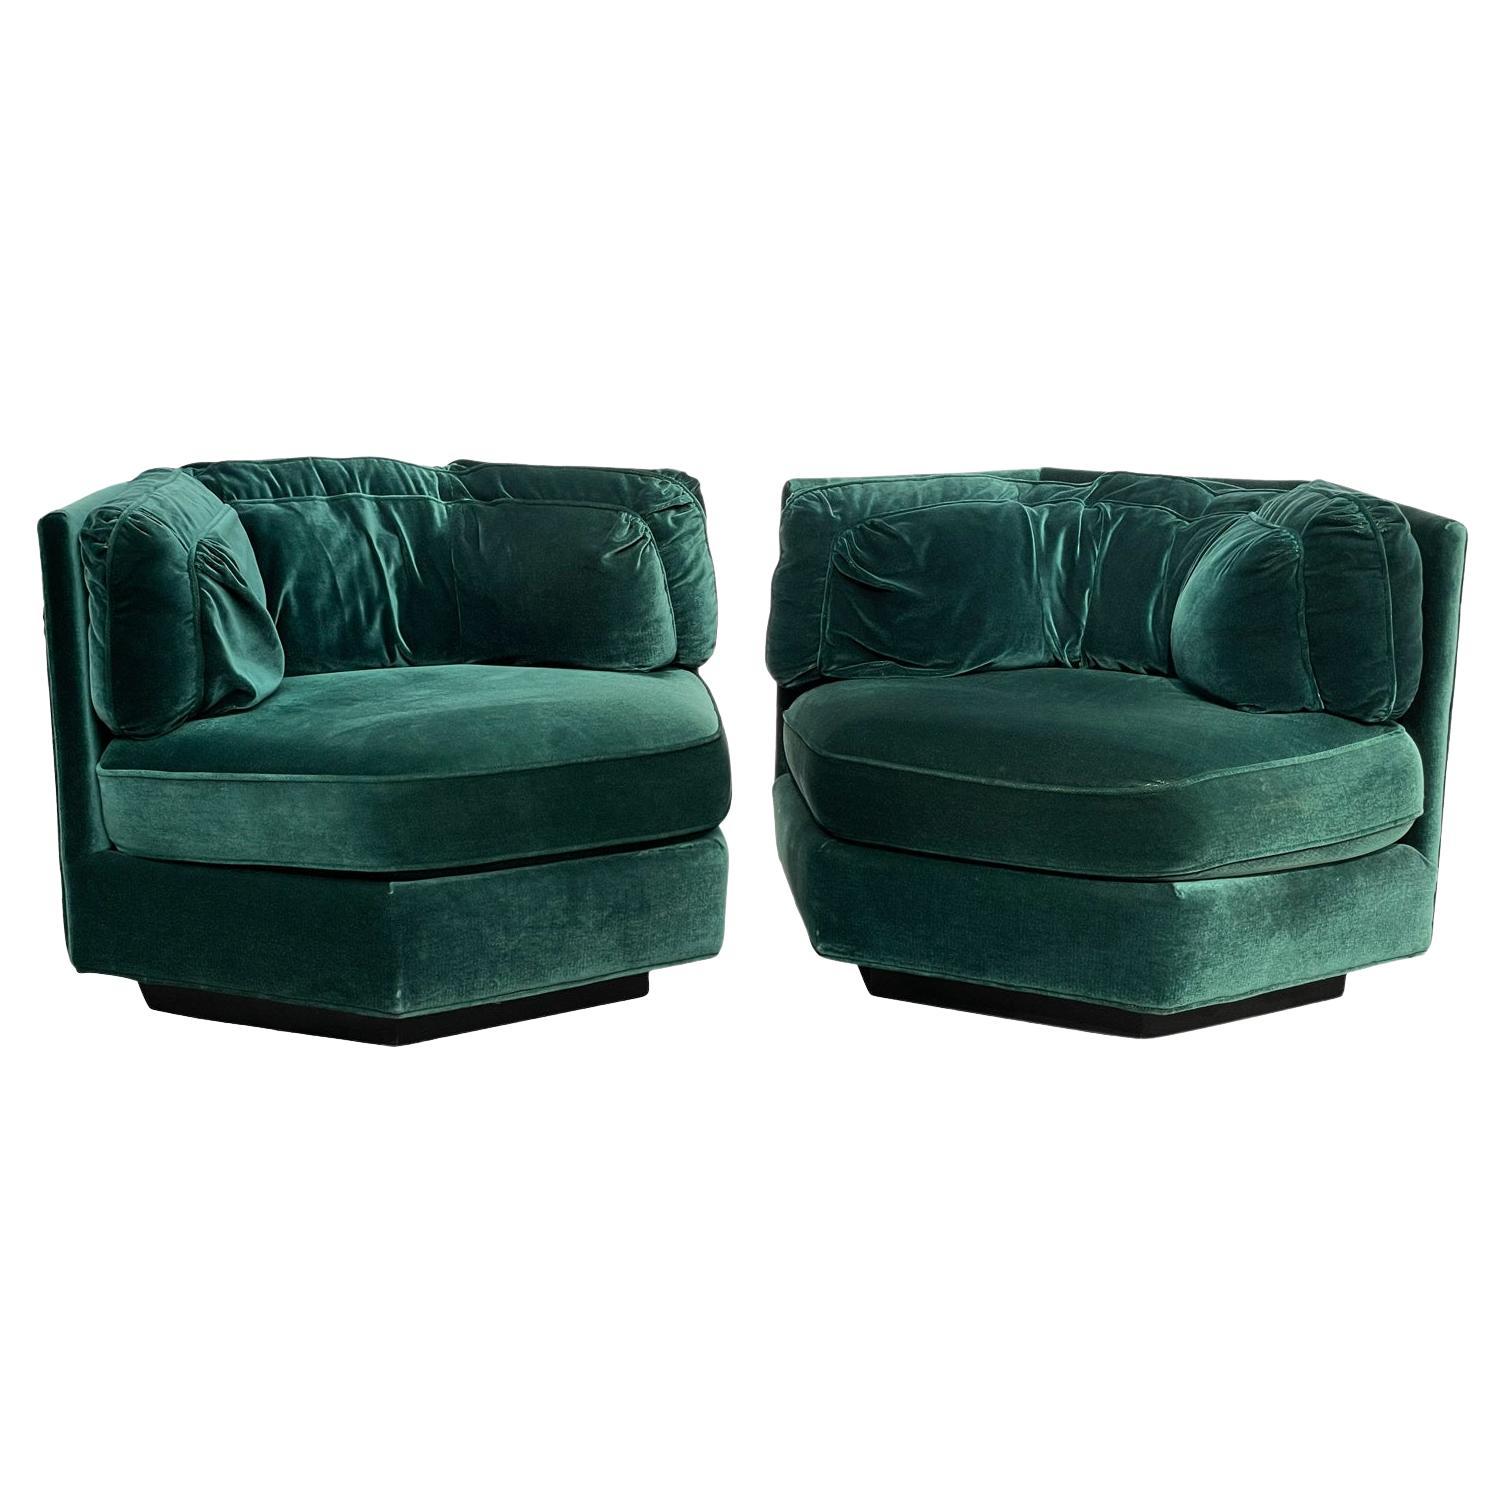 1970s Hexagonal Green Velvet Sofa Club Chair W/ Plinth Base-A Pair For Sale